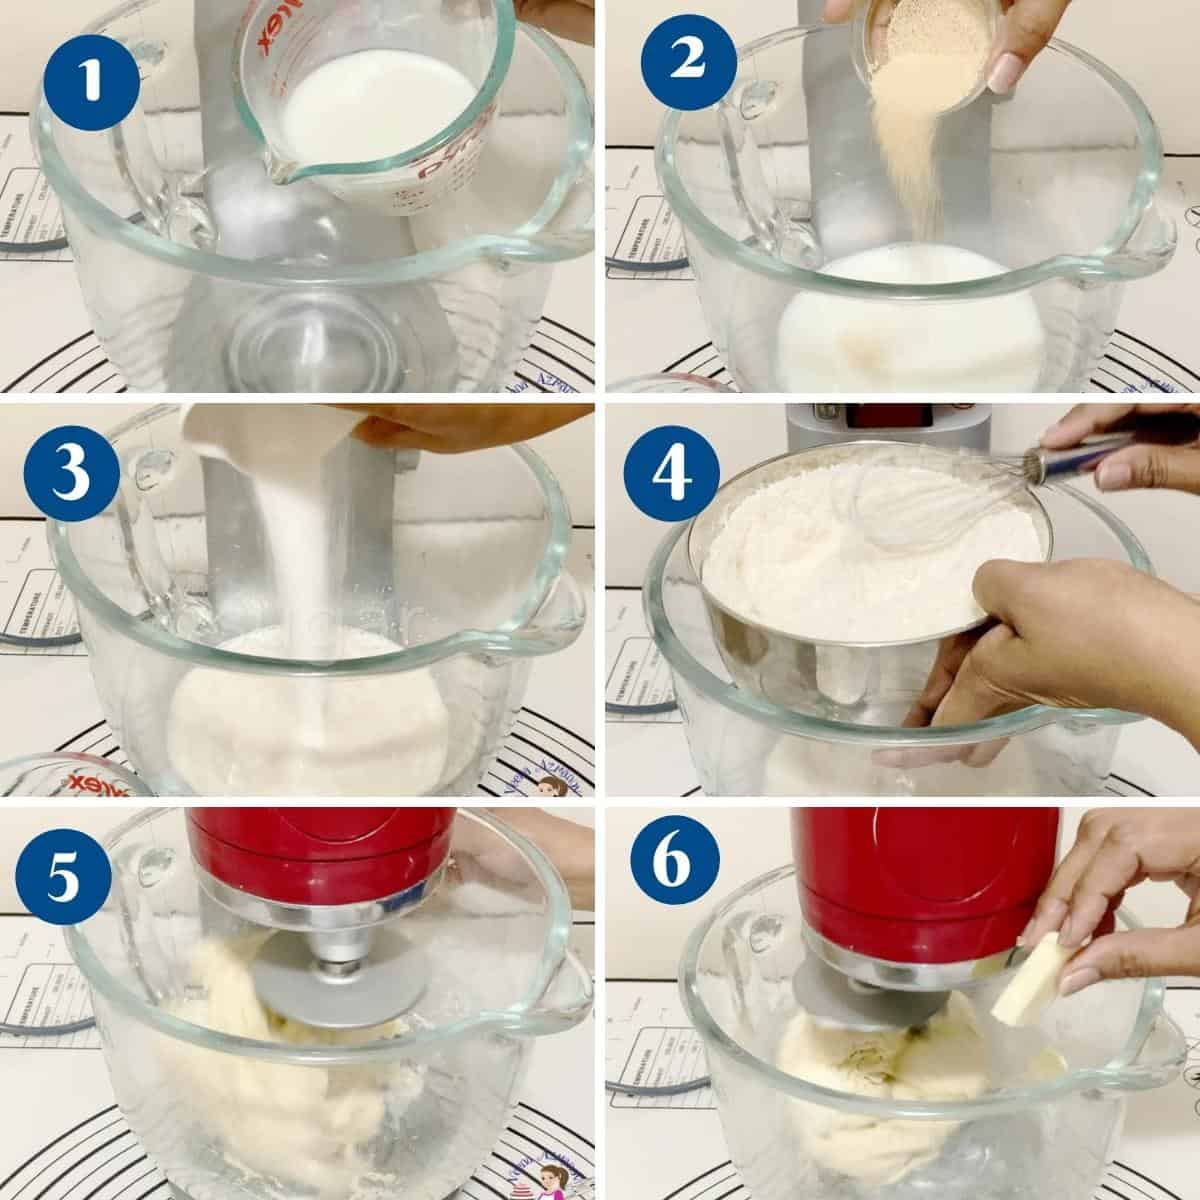 Progress pictures collage for preparing croissants dough.